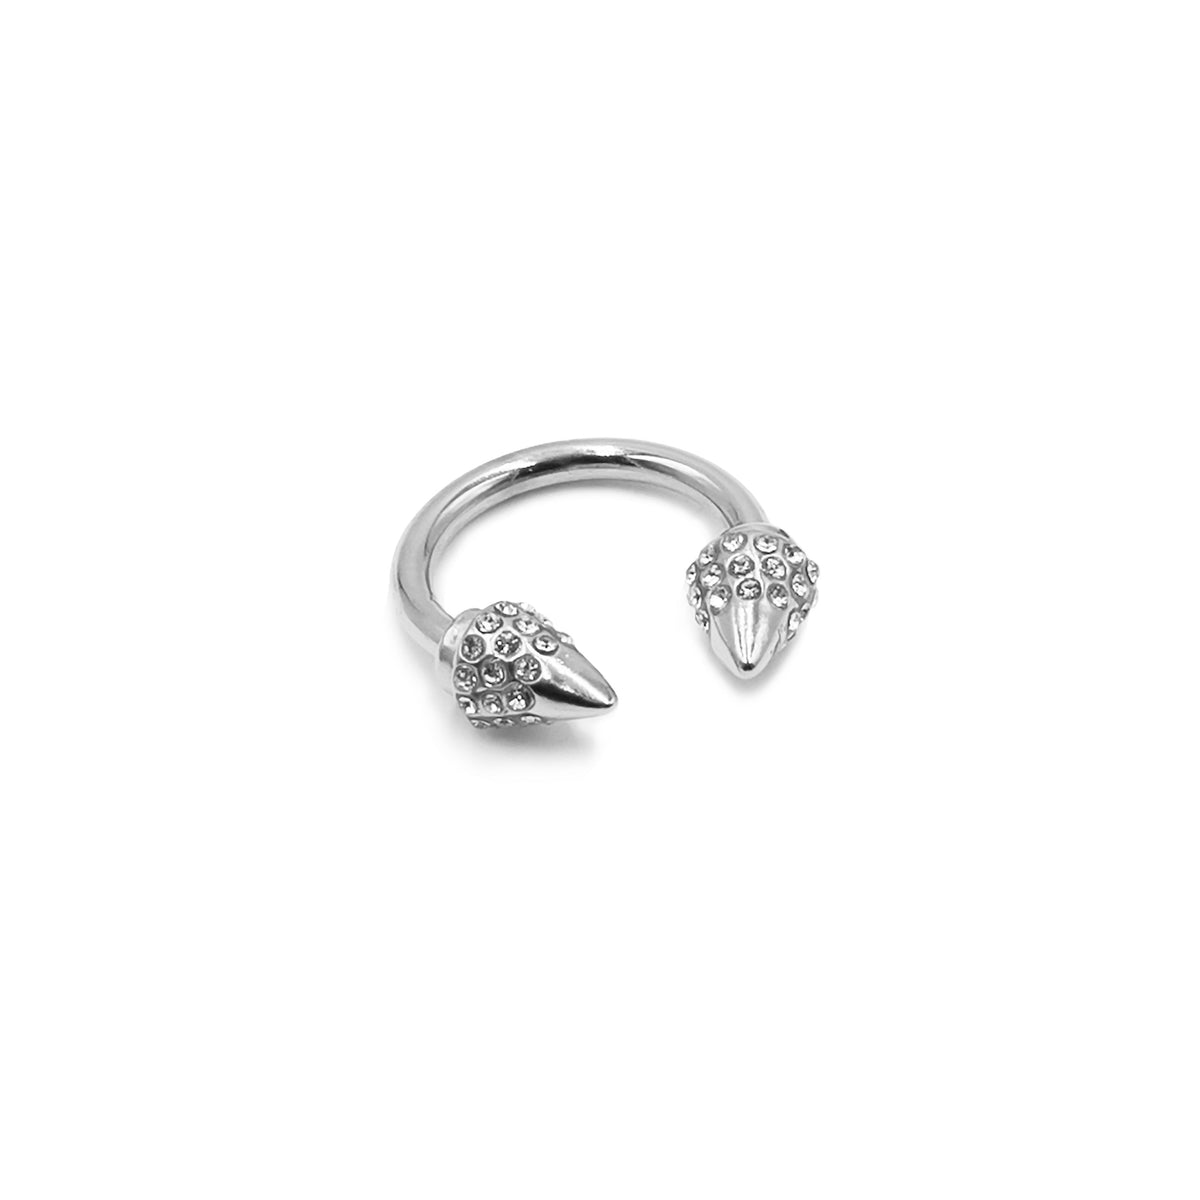 Colección Spike - Silver Bling Ring joyería fina de diseño para hombres y mujeres